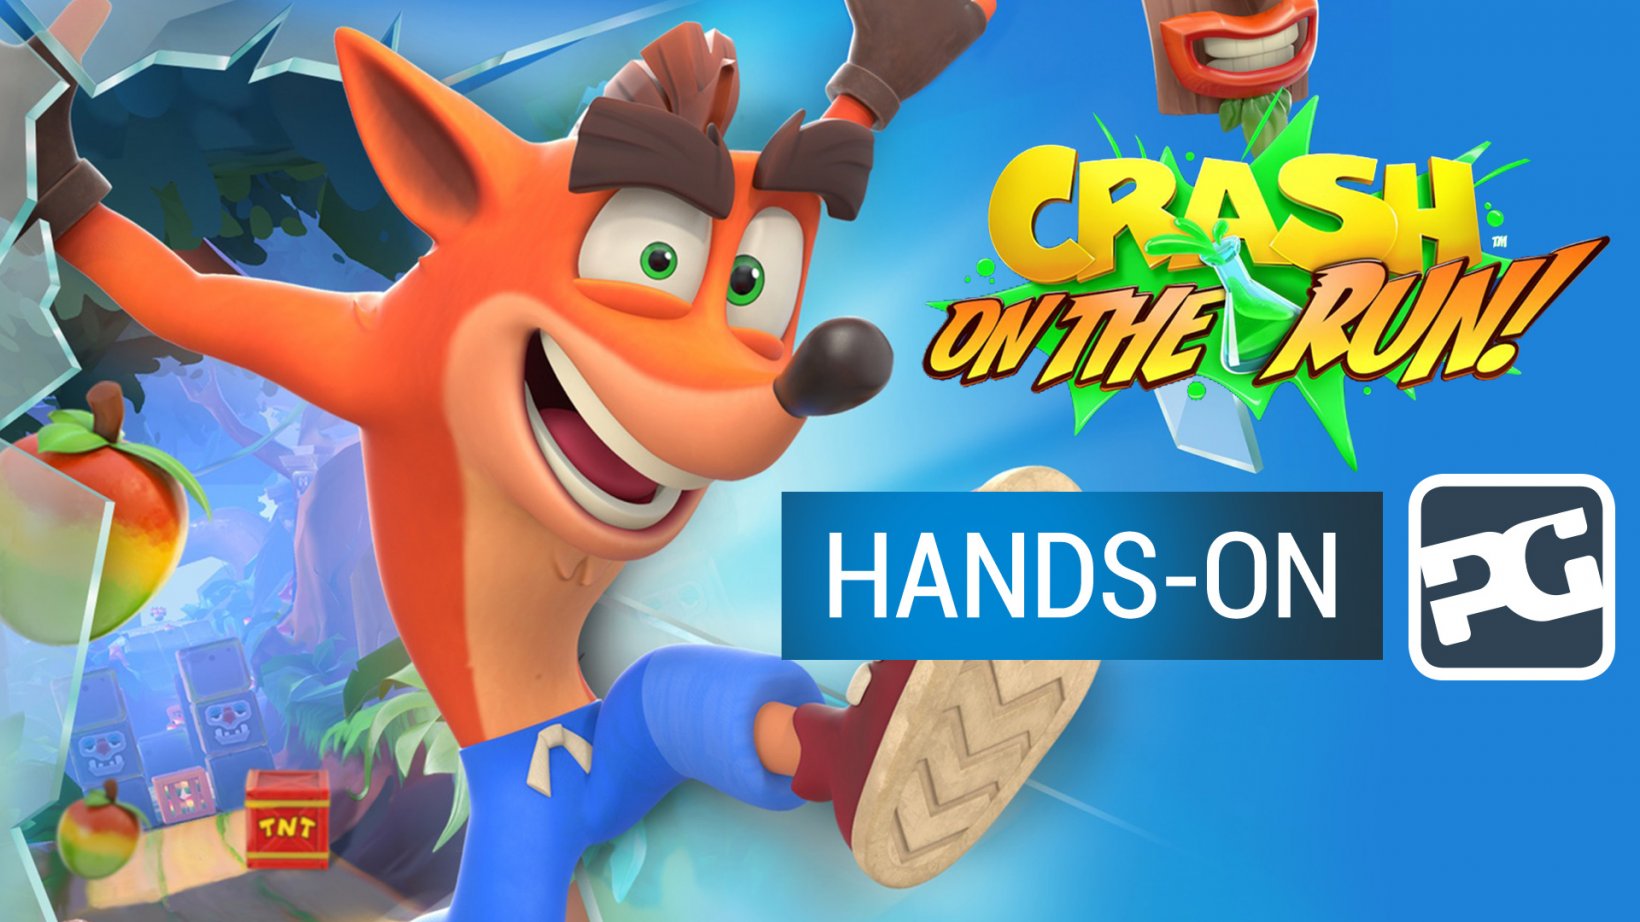 Crash Bandicoot: On The Run gameplay video